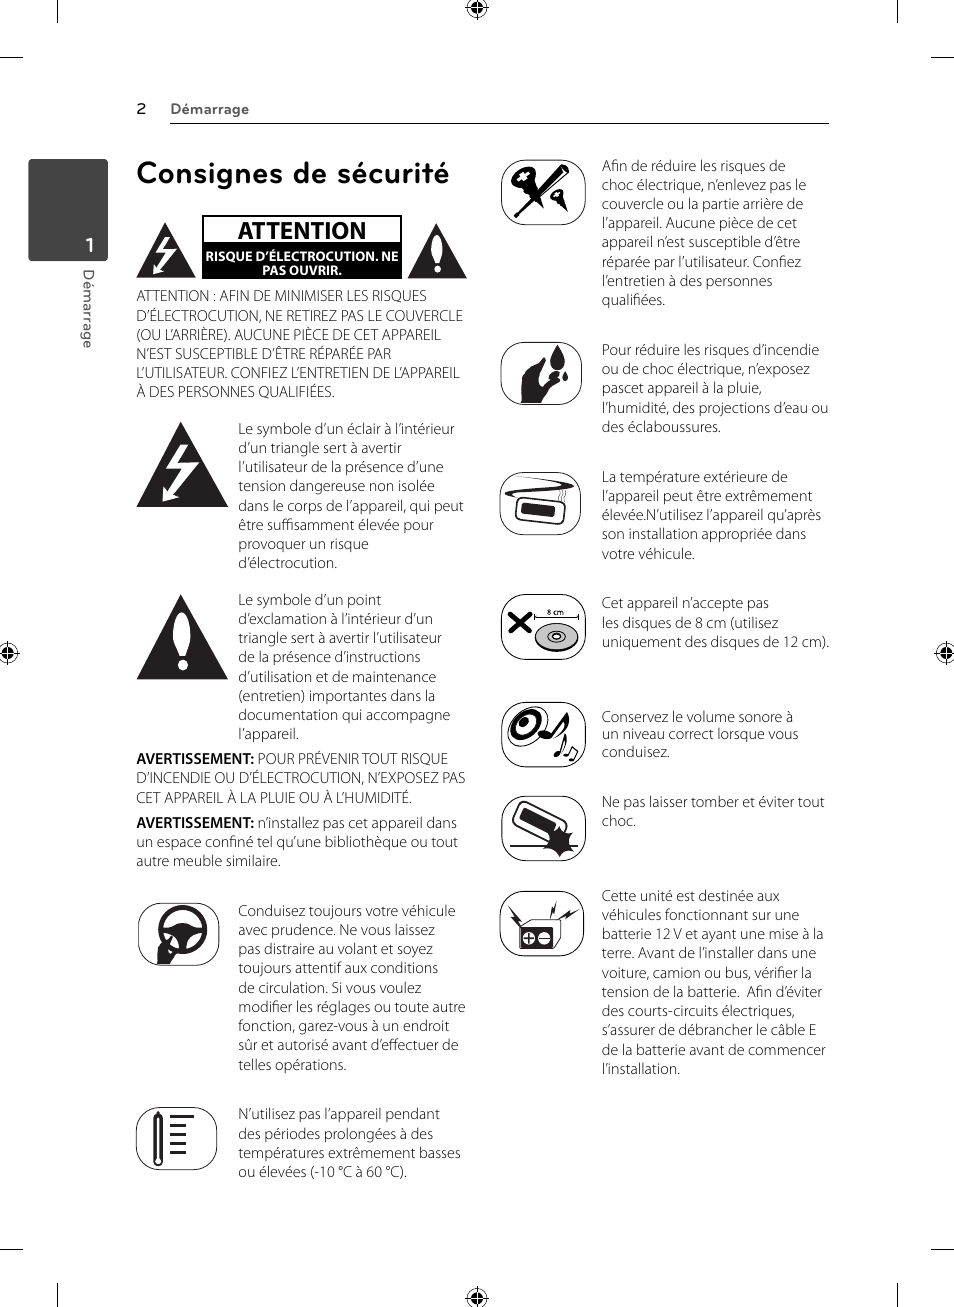 Consignes de sécurité, Attention | LG LCS110AR Manuel d'utilisation | Page 2 / 20